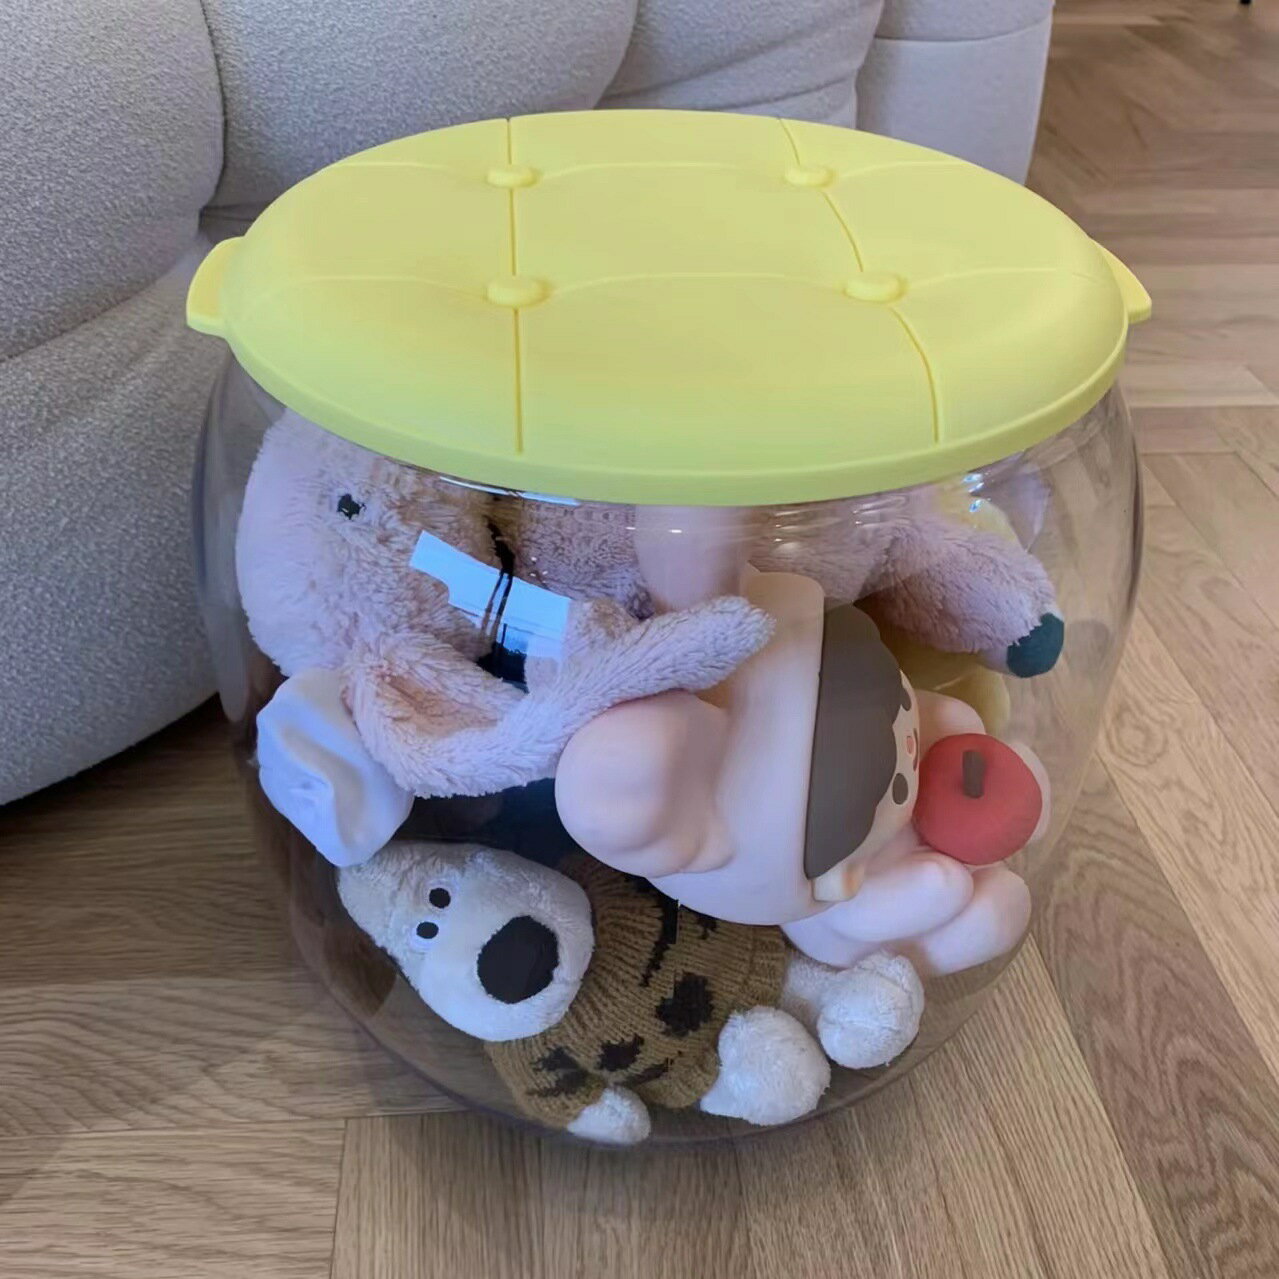 【免運】 收納凳兒童毛絨玩具娃娃玩偶收納箱收納桶神器透明儲物凳可坐凳子